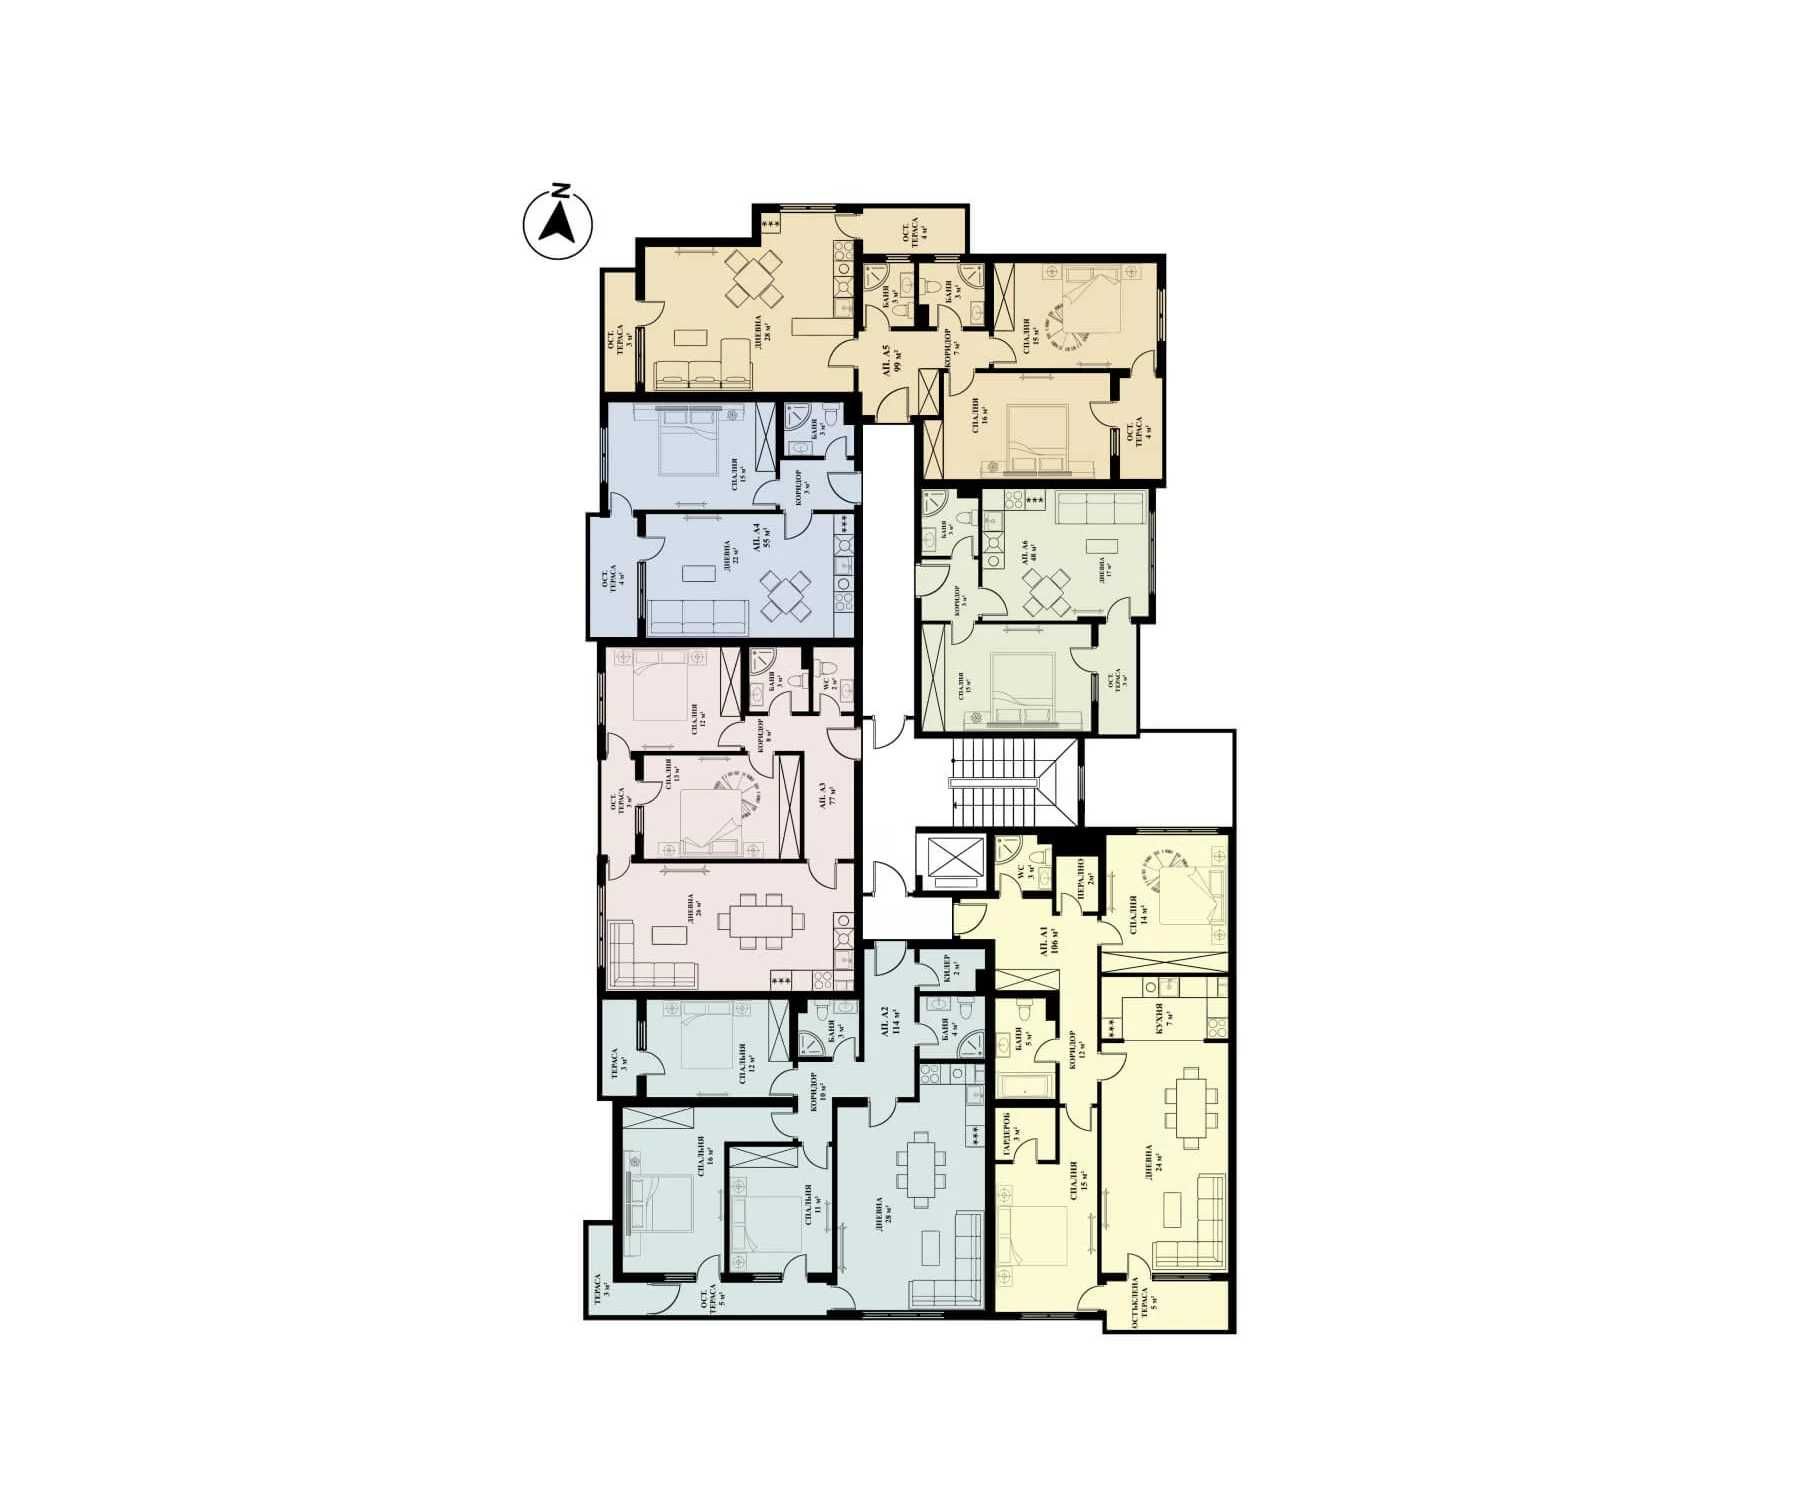 3-стайни, 2-стайни и 4-стаини апартаменти в нова сграда в ж.к. Люлин 5